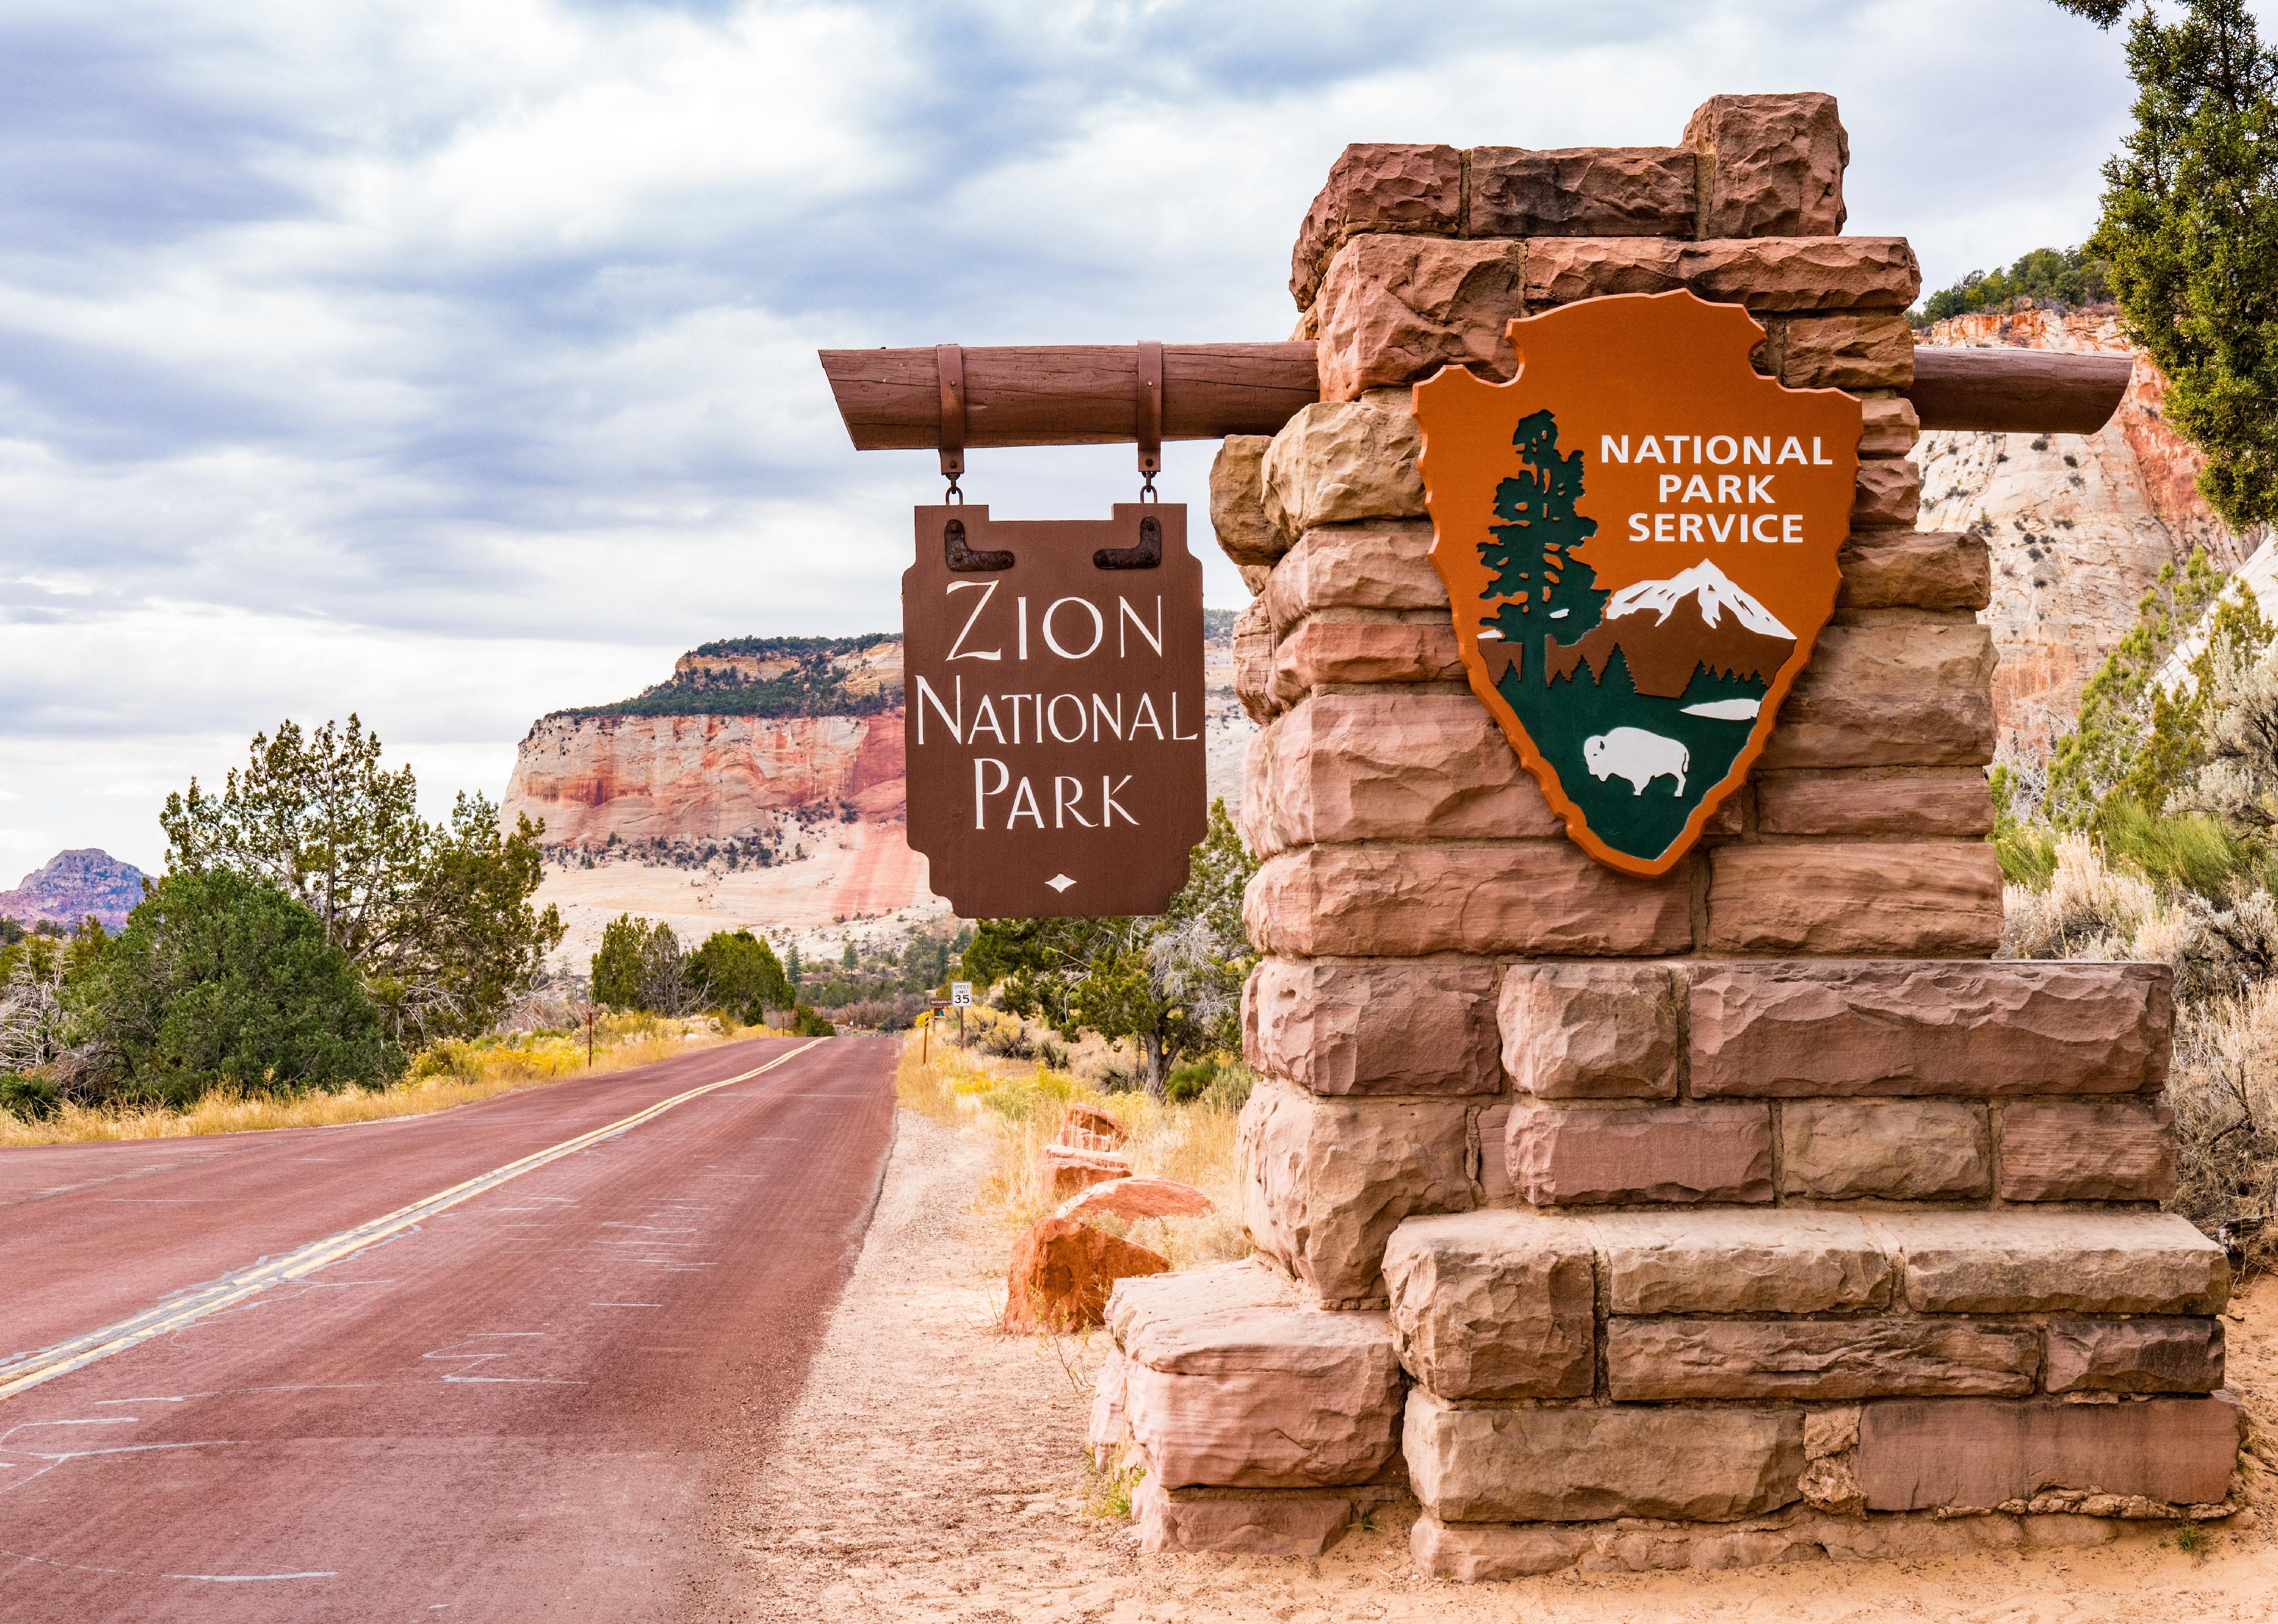 Entrance sign to Zion National Park in Springdale, Utah.